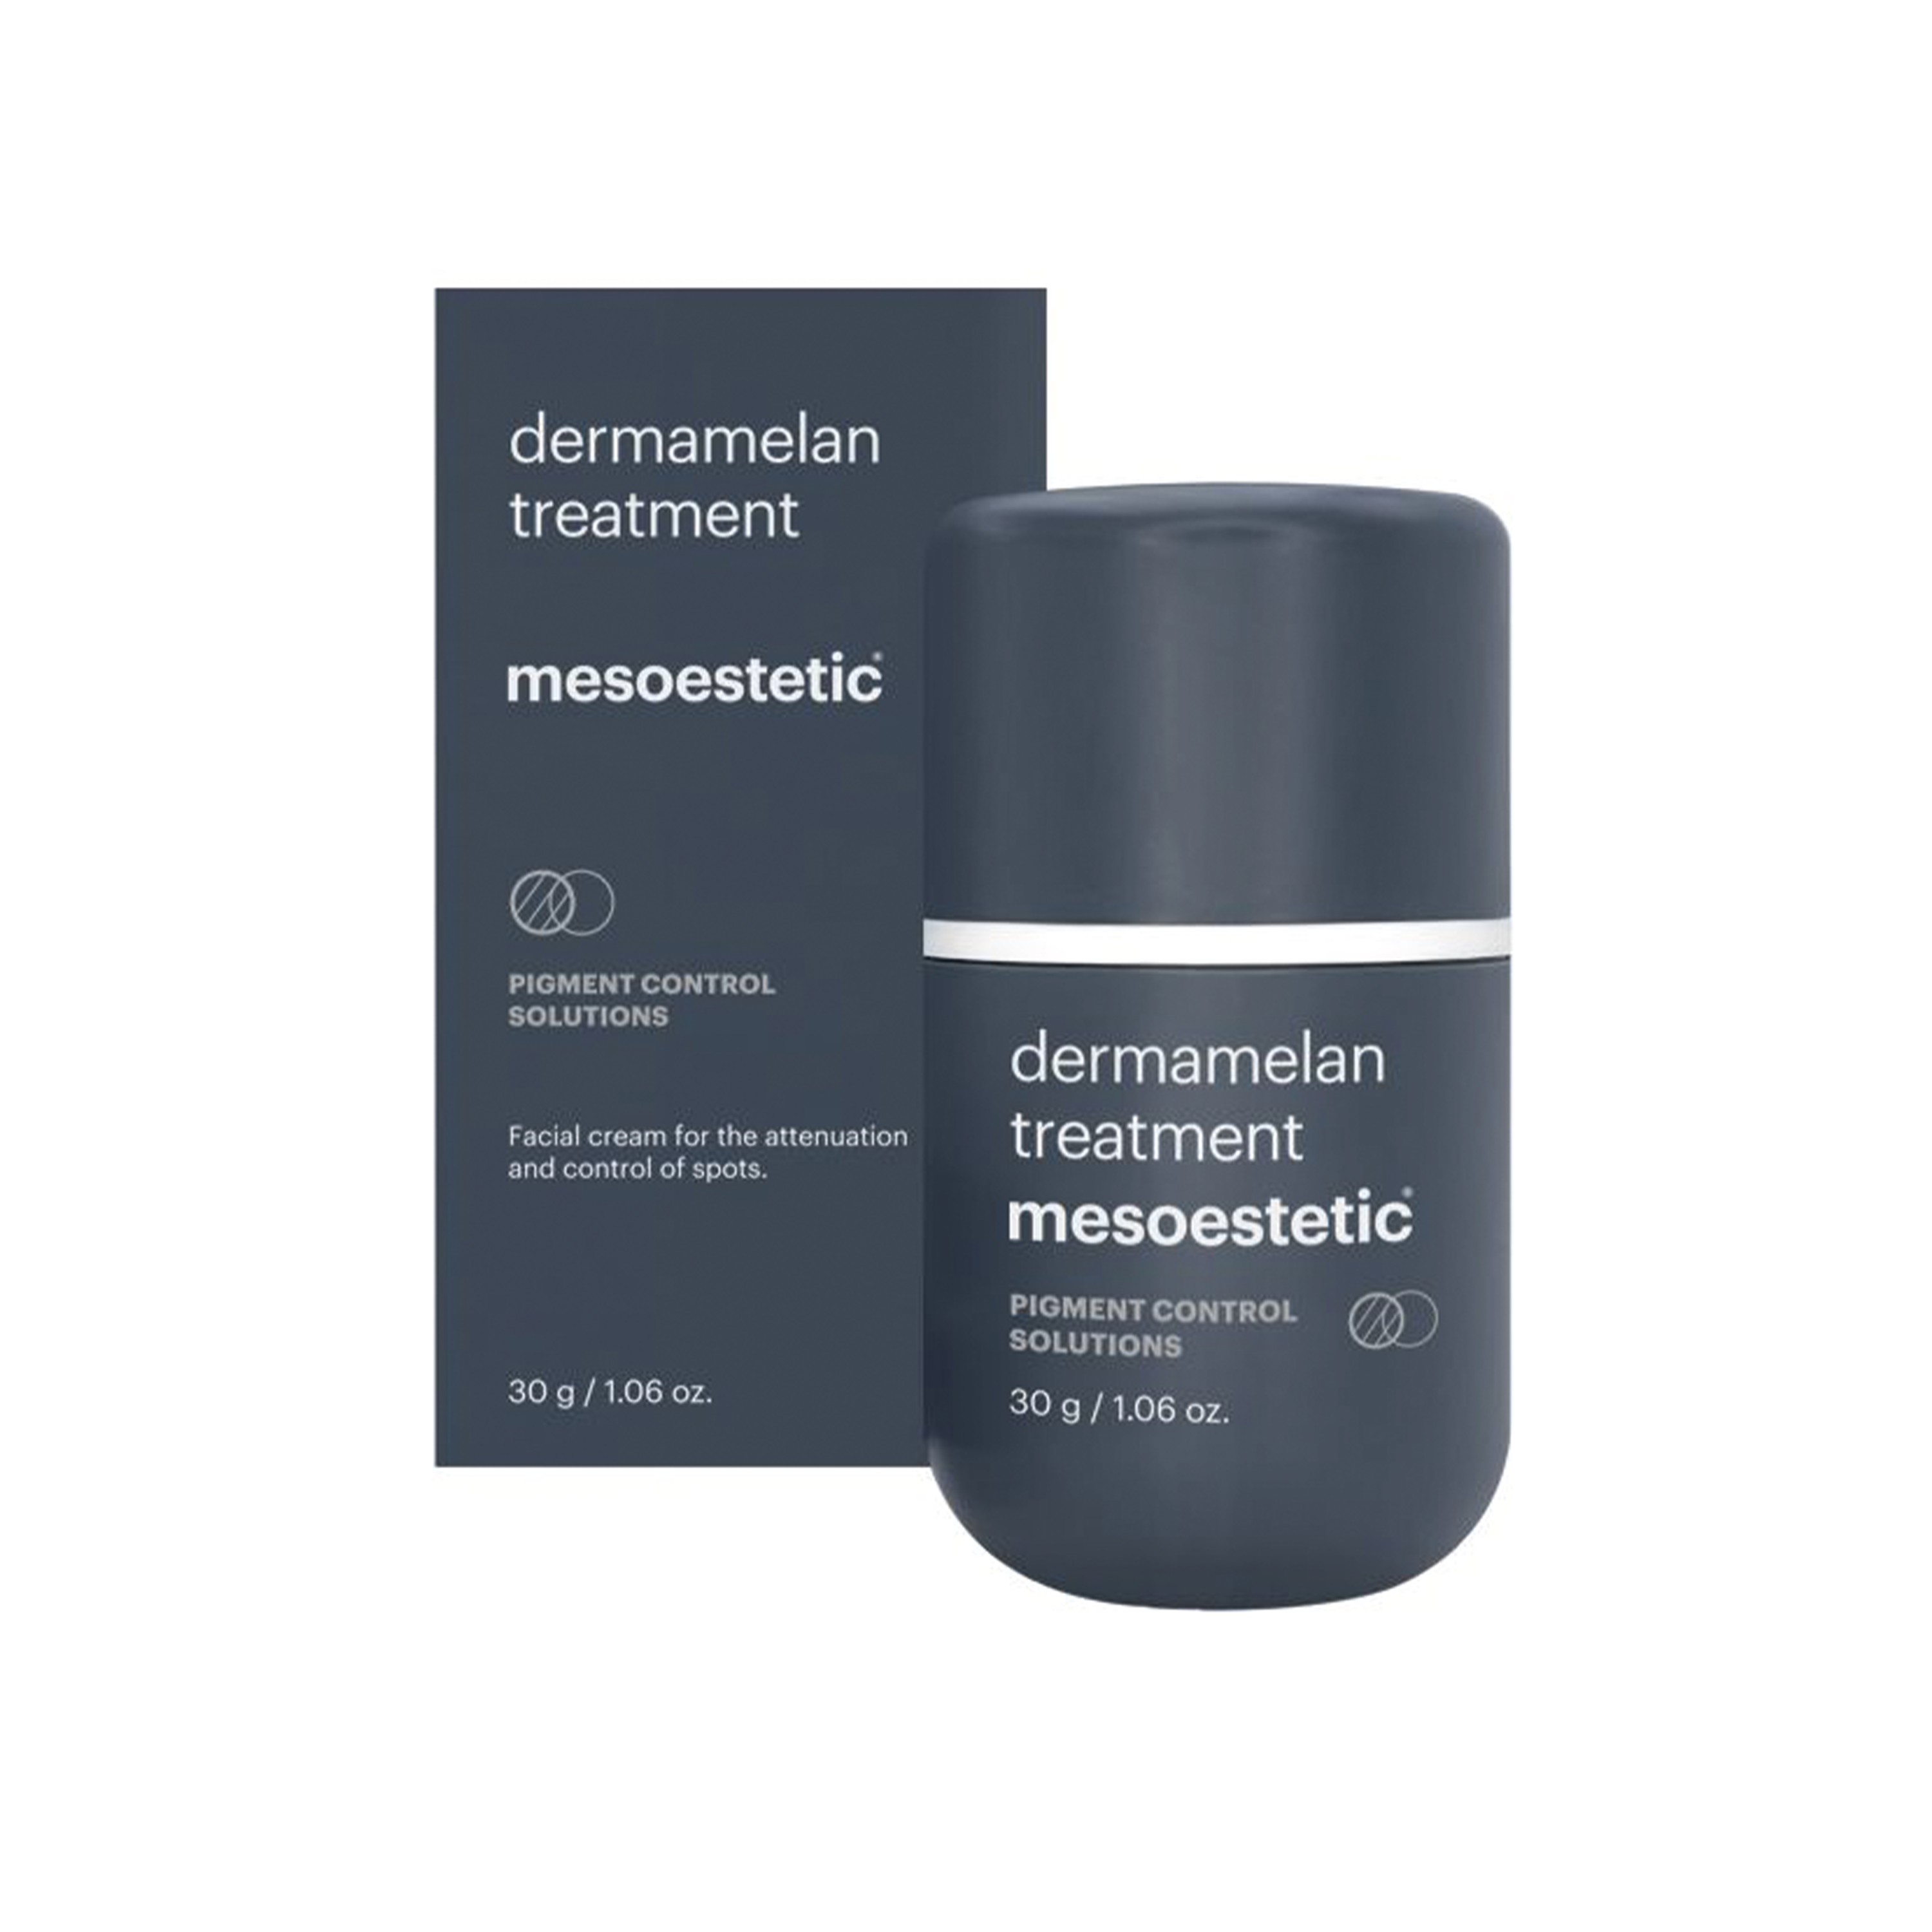 Se Mesoestetic Dermamelan Treatment - Creme til behandling af mørke pletter i huden - 30g - Medicinsk hudpleje mod pigmentforandringer og pigmentpletter hos Mesoestetic